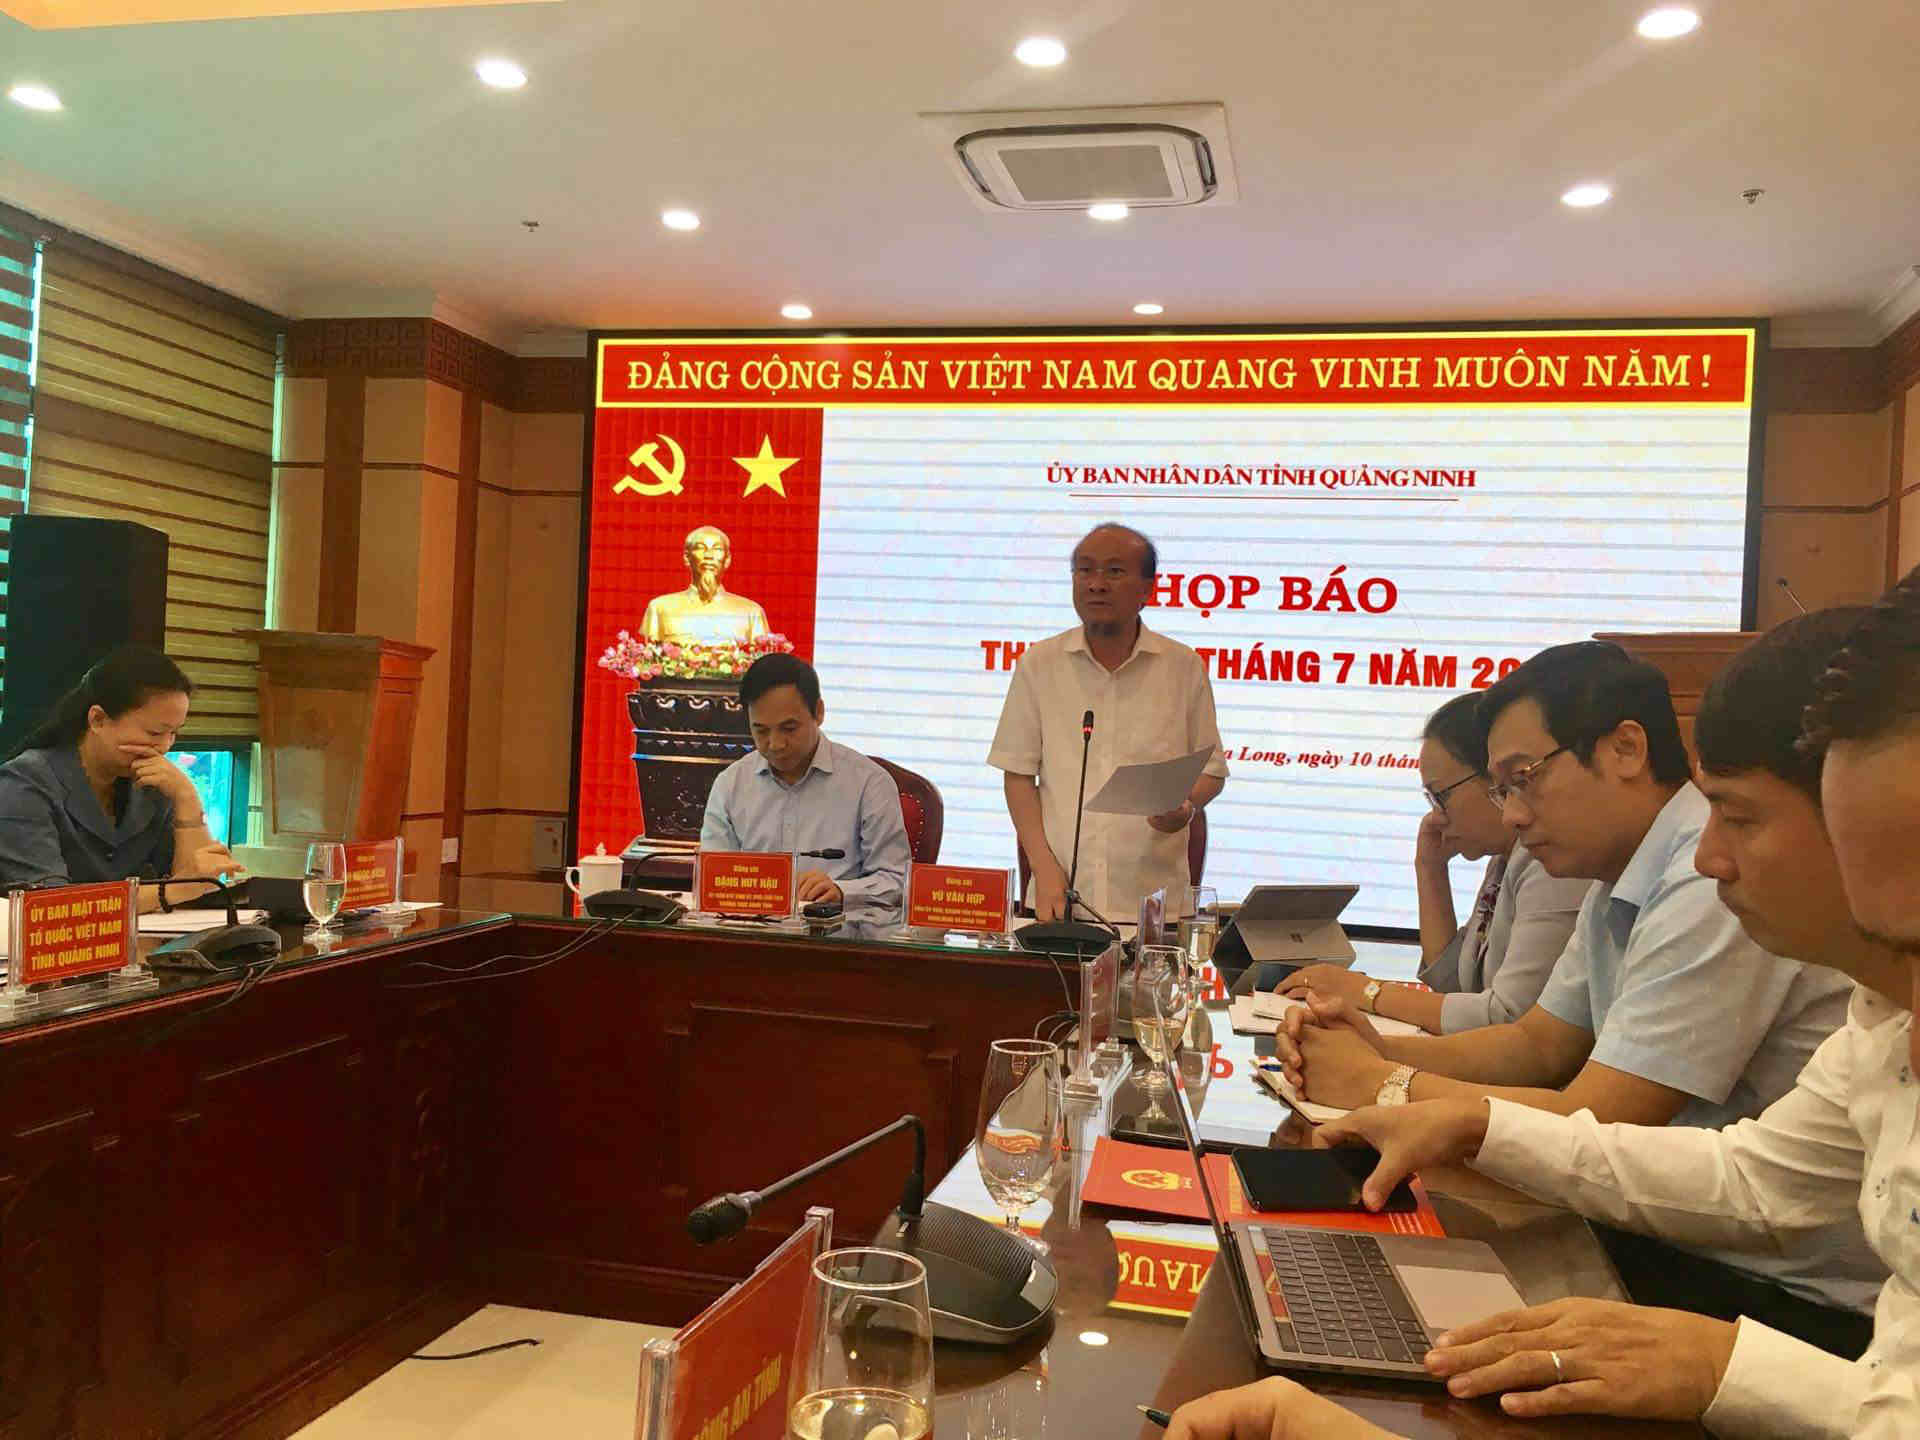 Ông Vũ Văn Hợp, Chánh văn phòng Đoàn ĐBQH - HĐND-UBND Quảng Ninh thông tin về tình hình phát triển kinh tế - xã hội nửa đầu năm 2019 của Quảng Ninh. Ảnh Thanh Tân.